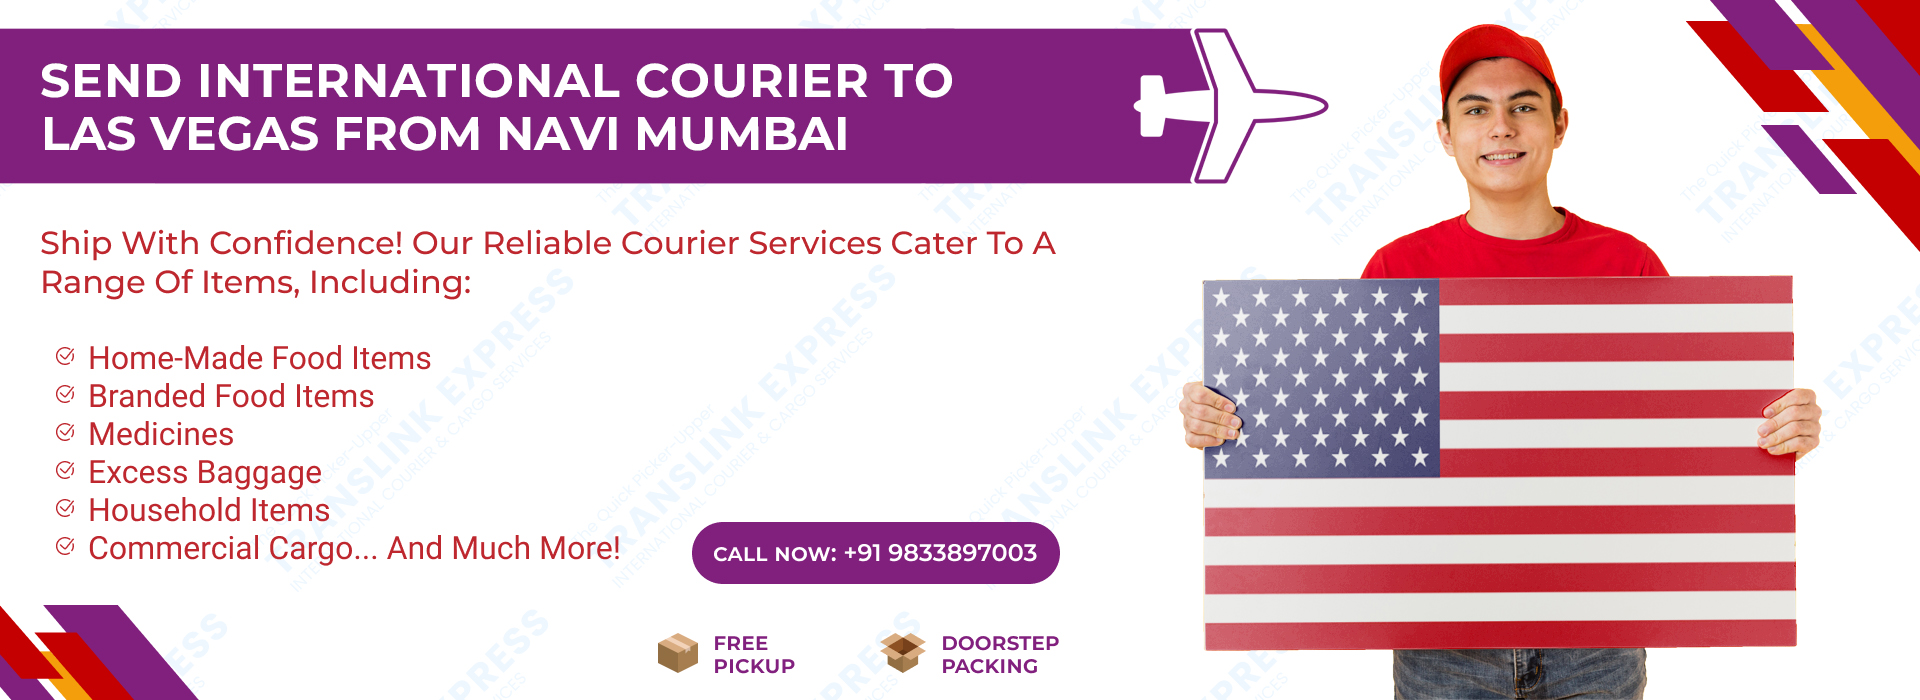 Courier to Las Vegas From Navi Mumbai